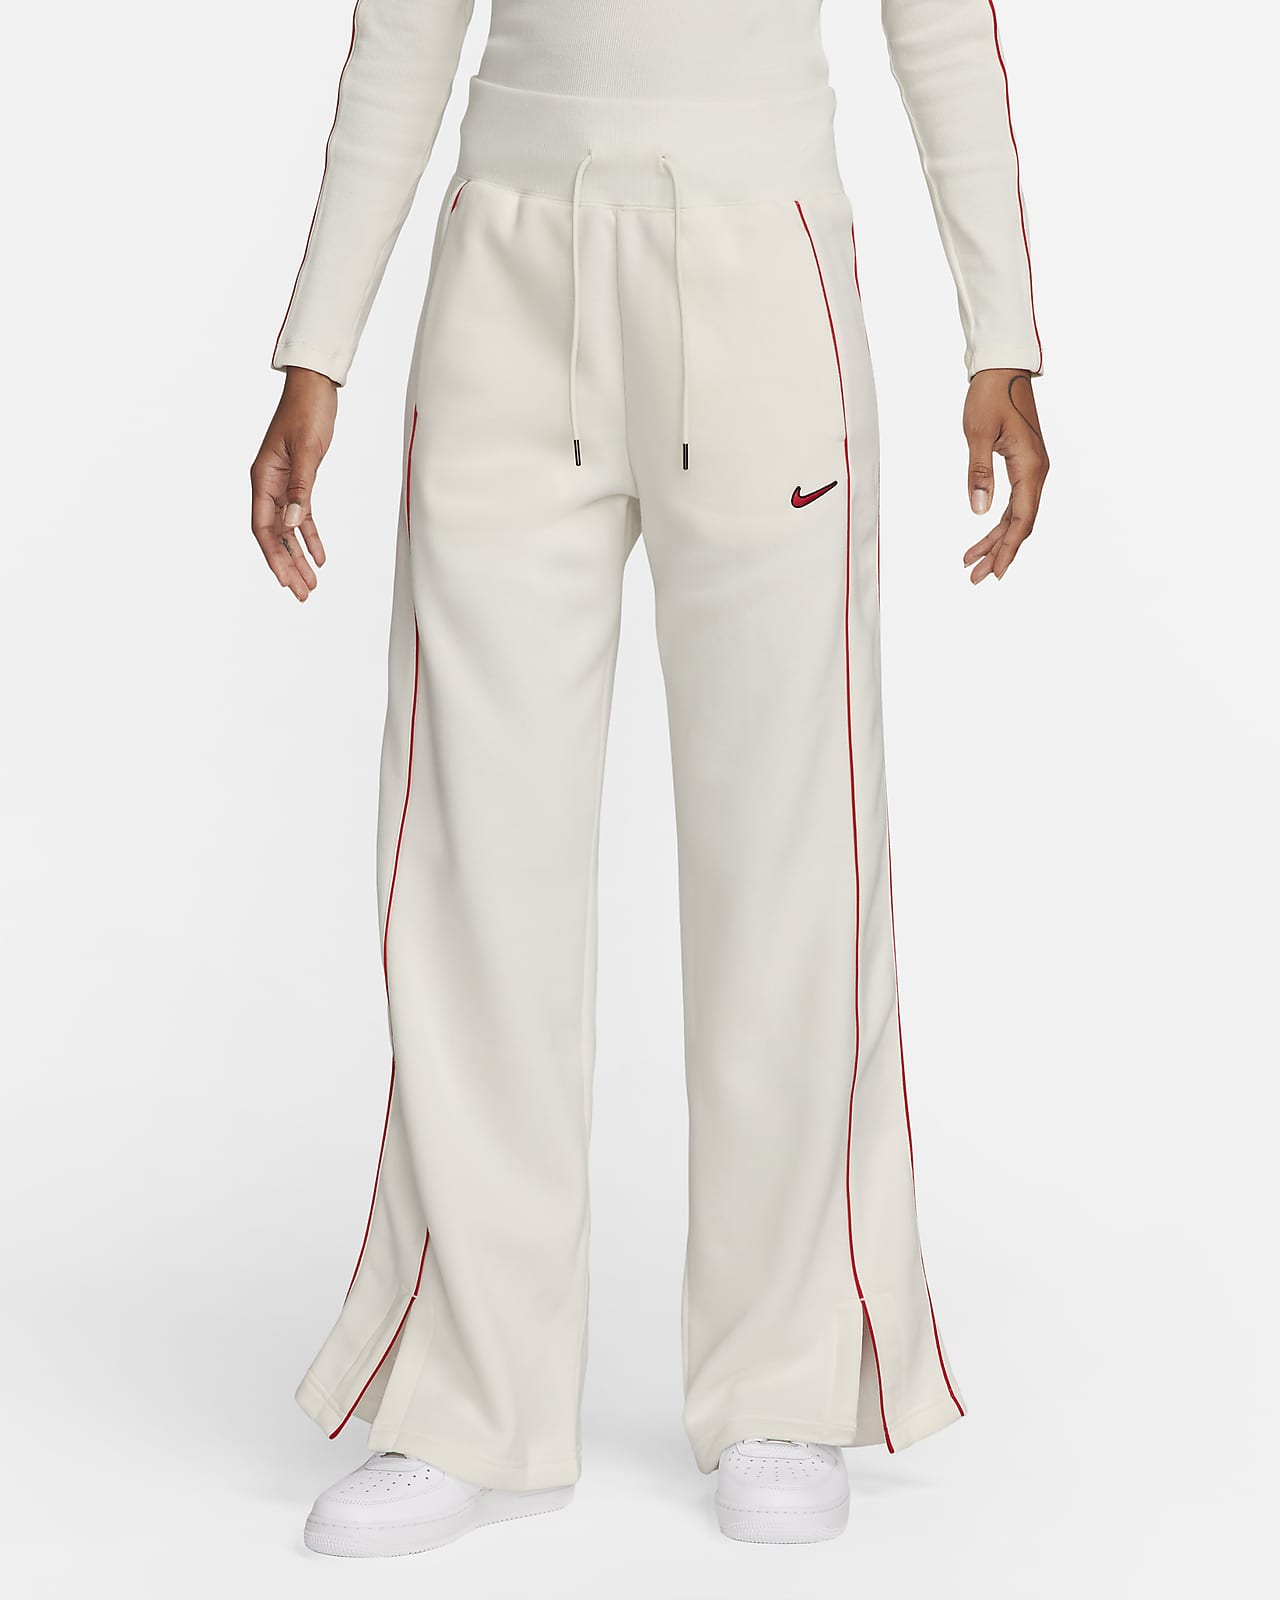 Γυναικείο ψηλόμεσο παντελόνι φόρμας με ανοιχτό τελείωμα στα μπατζάκια Nike Sportswear Phoenix Fleece